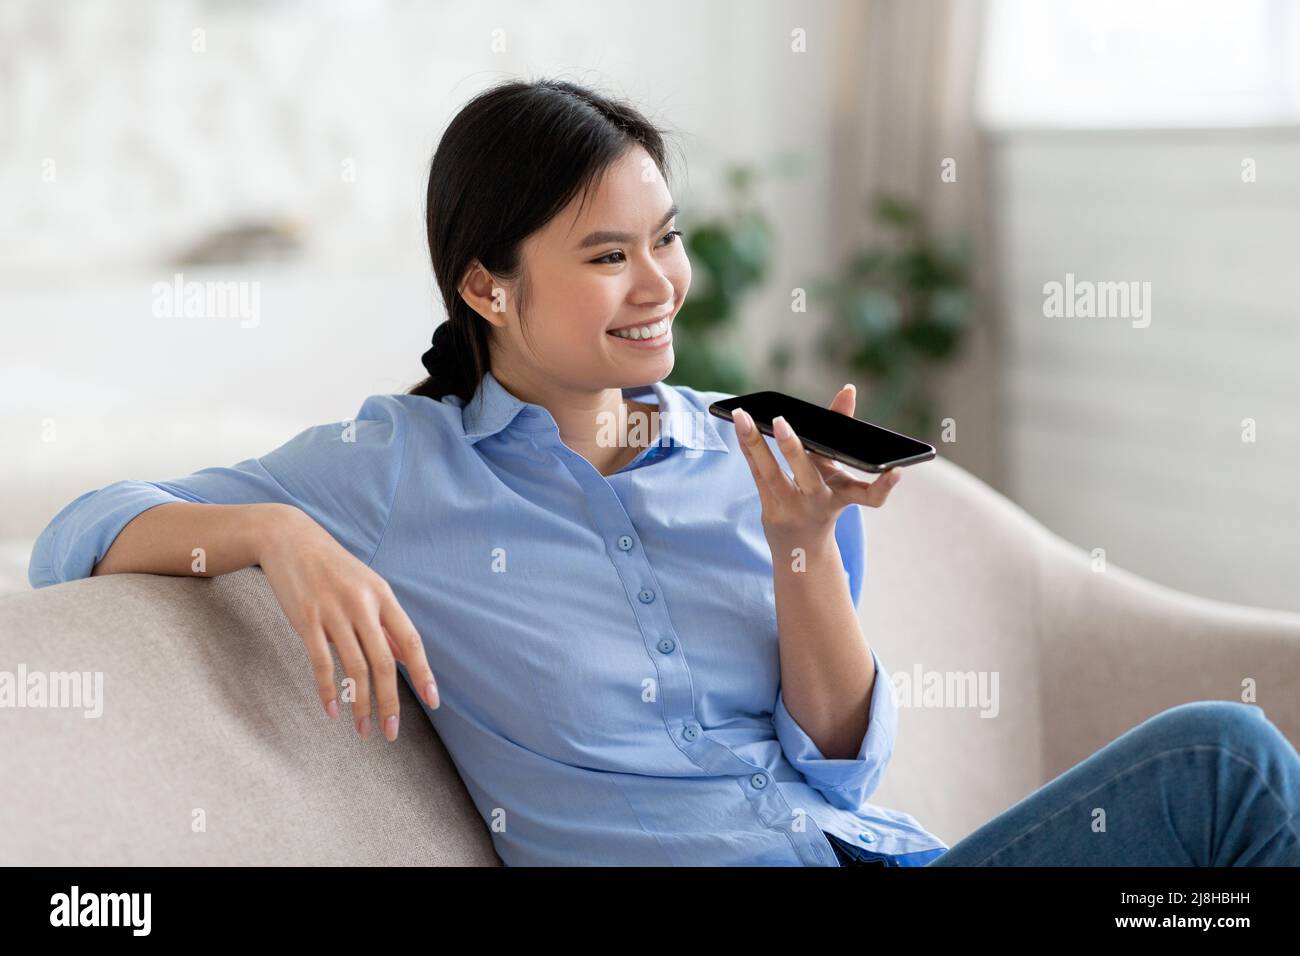 Gros plan d'une femme asiatique joyeuse tenant un smartphone et enregistrant un message vocal Banque D'Images